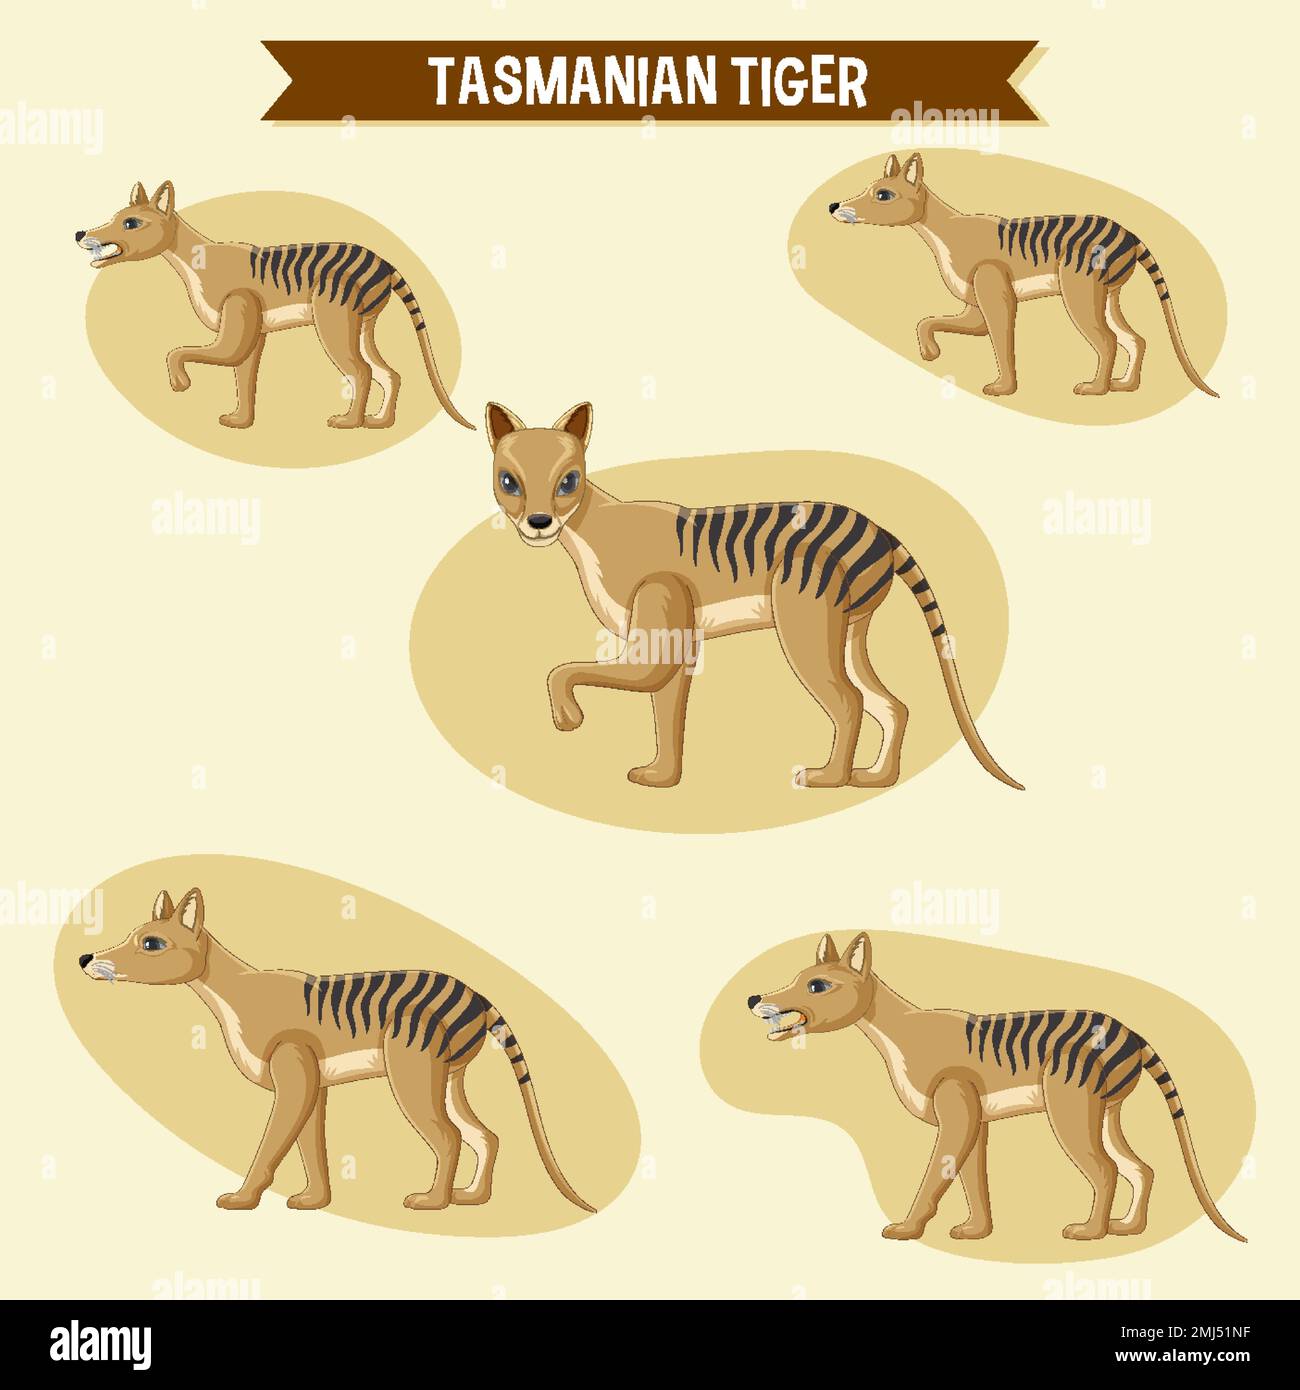 Ein Satz tasmanischer Tiger-Aufkleber-Set-Illustration Stock Vektor